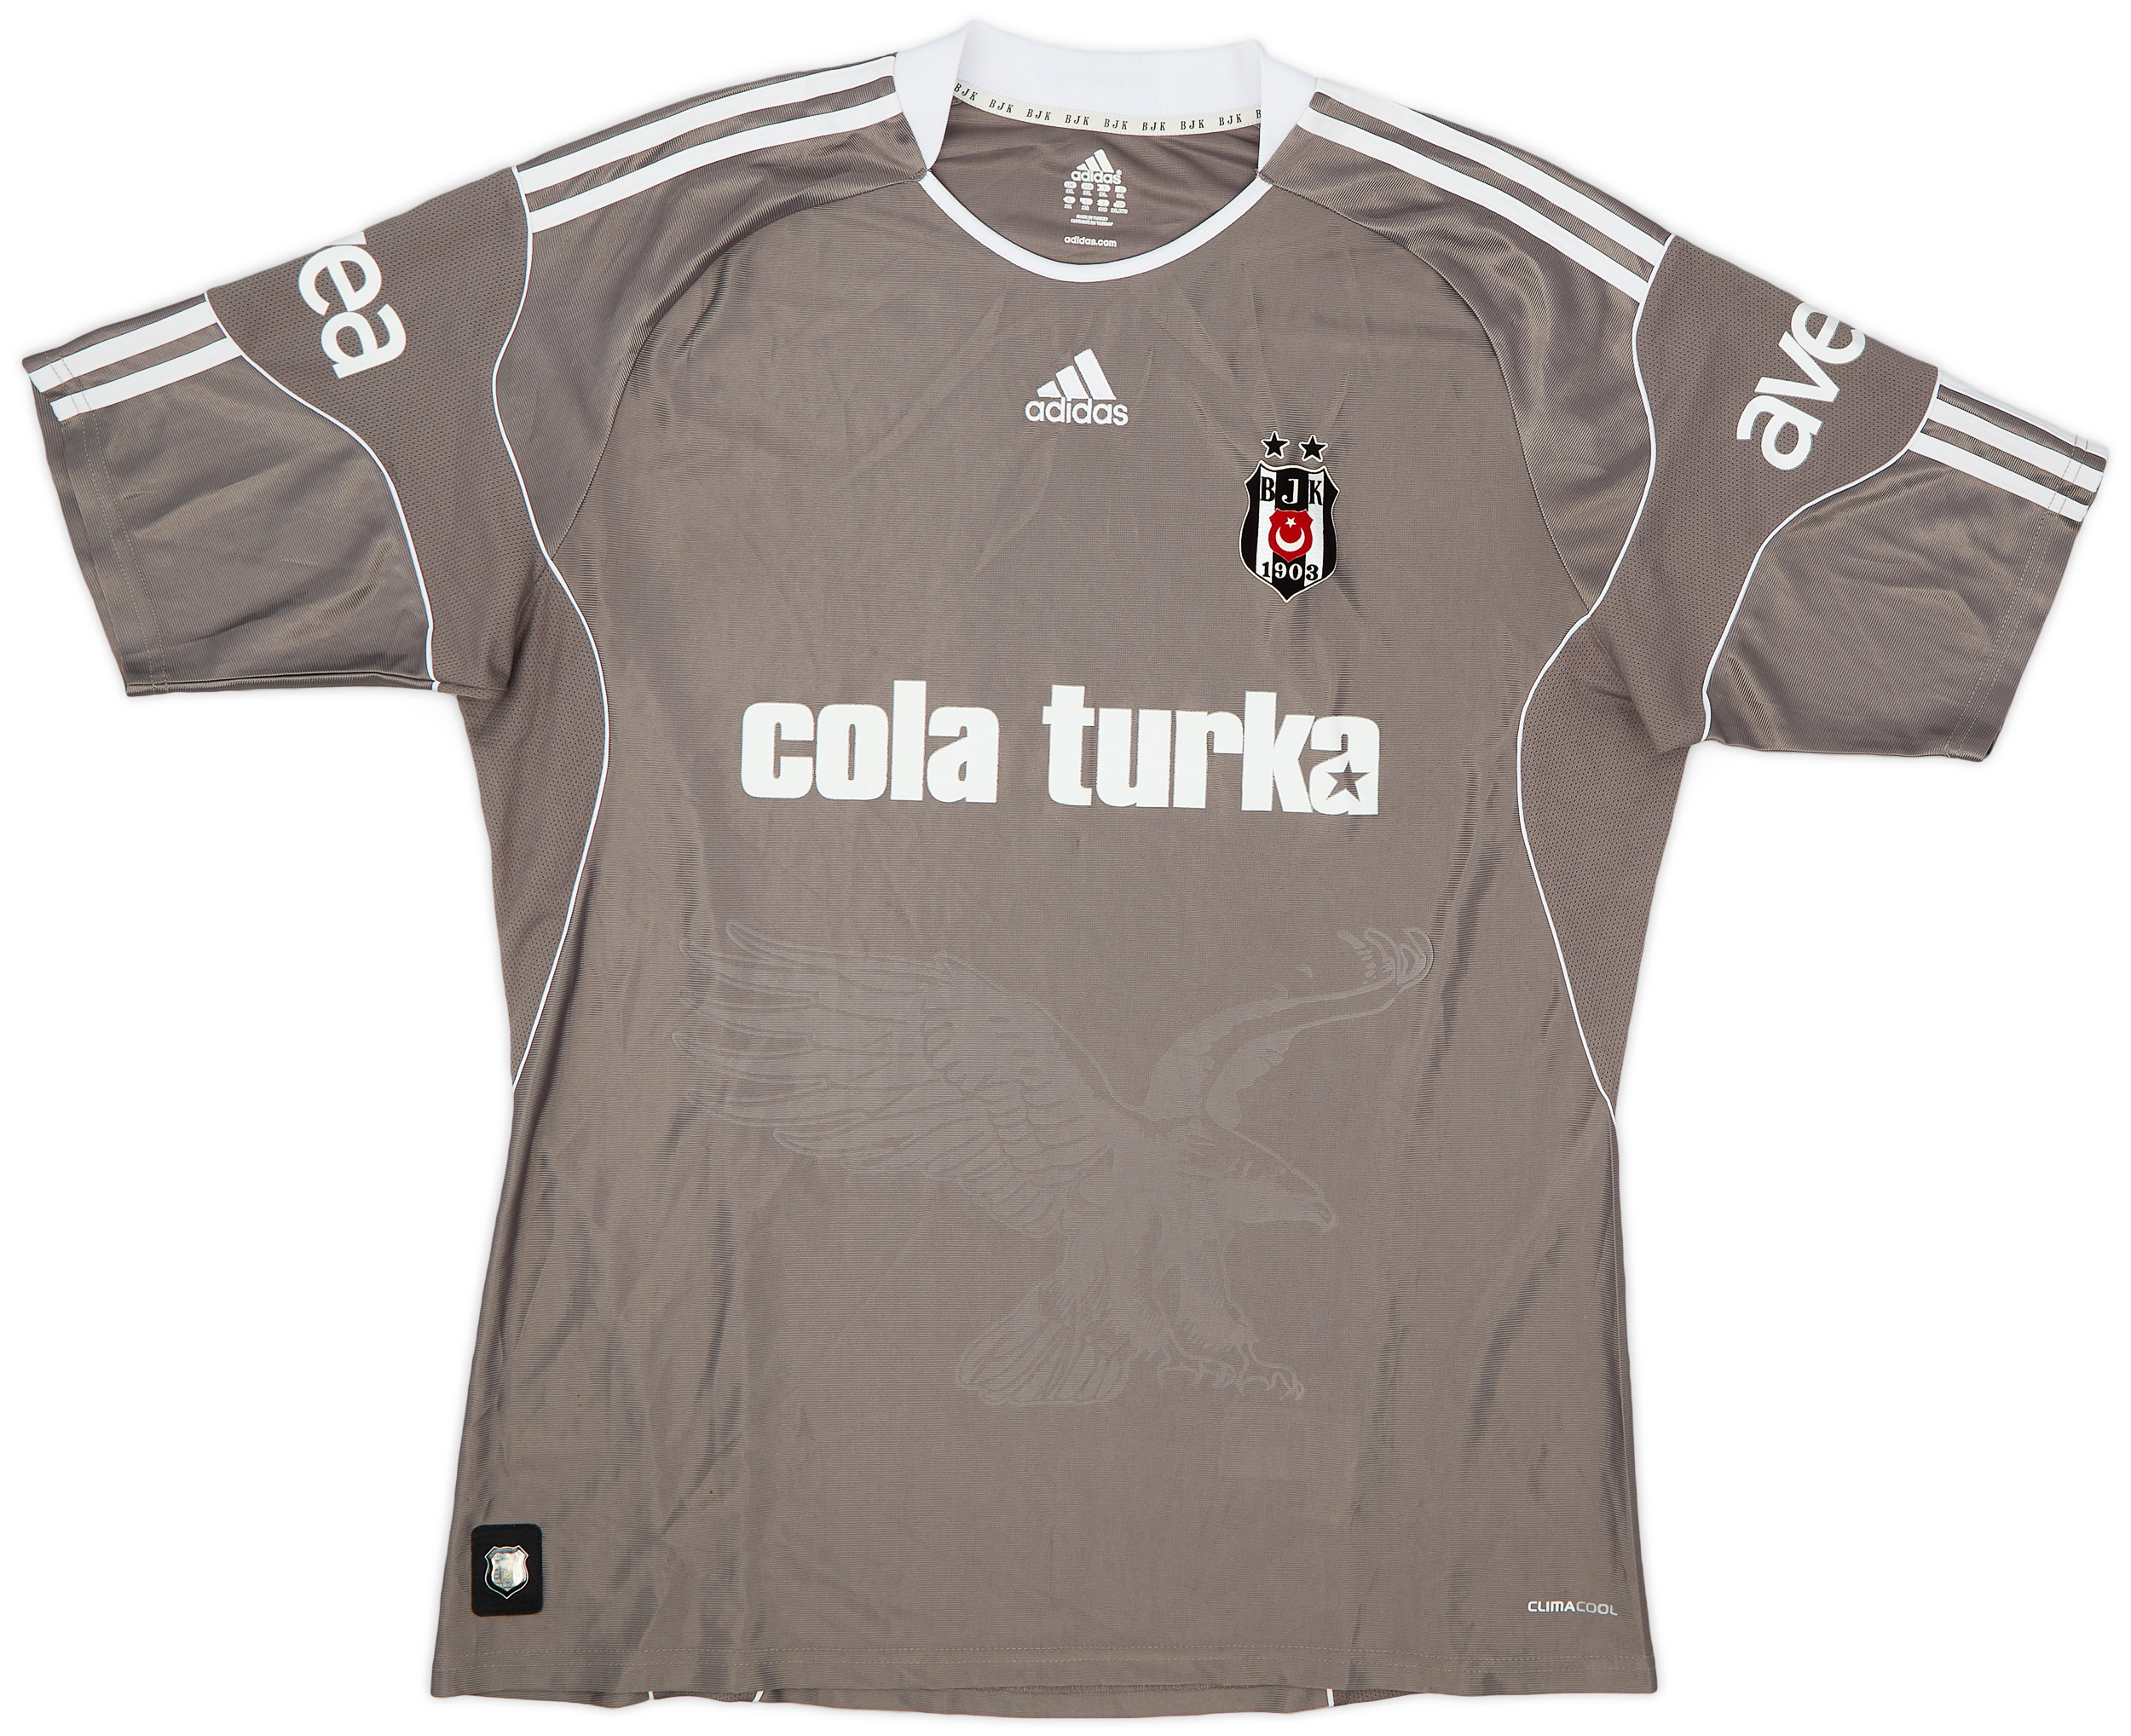 Besiktas Home camisa de futebol 2012 - 2013. Sponsored by Toyota